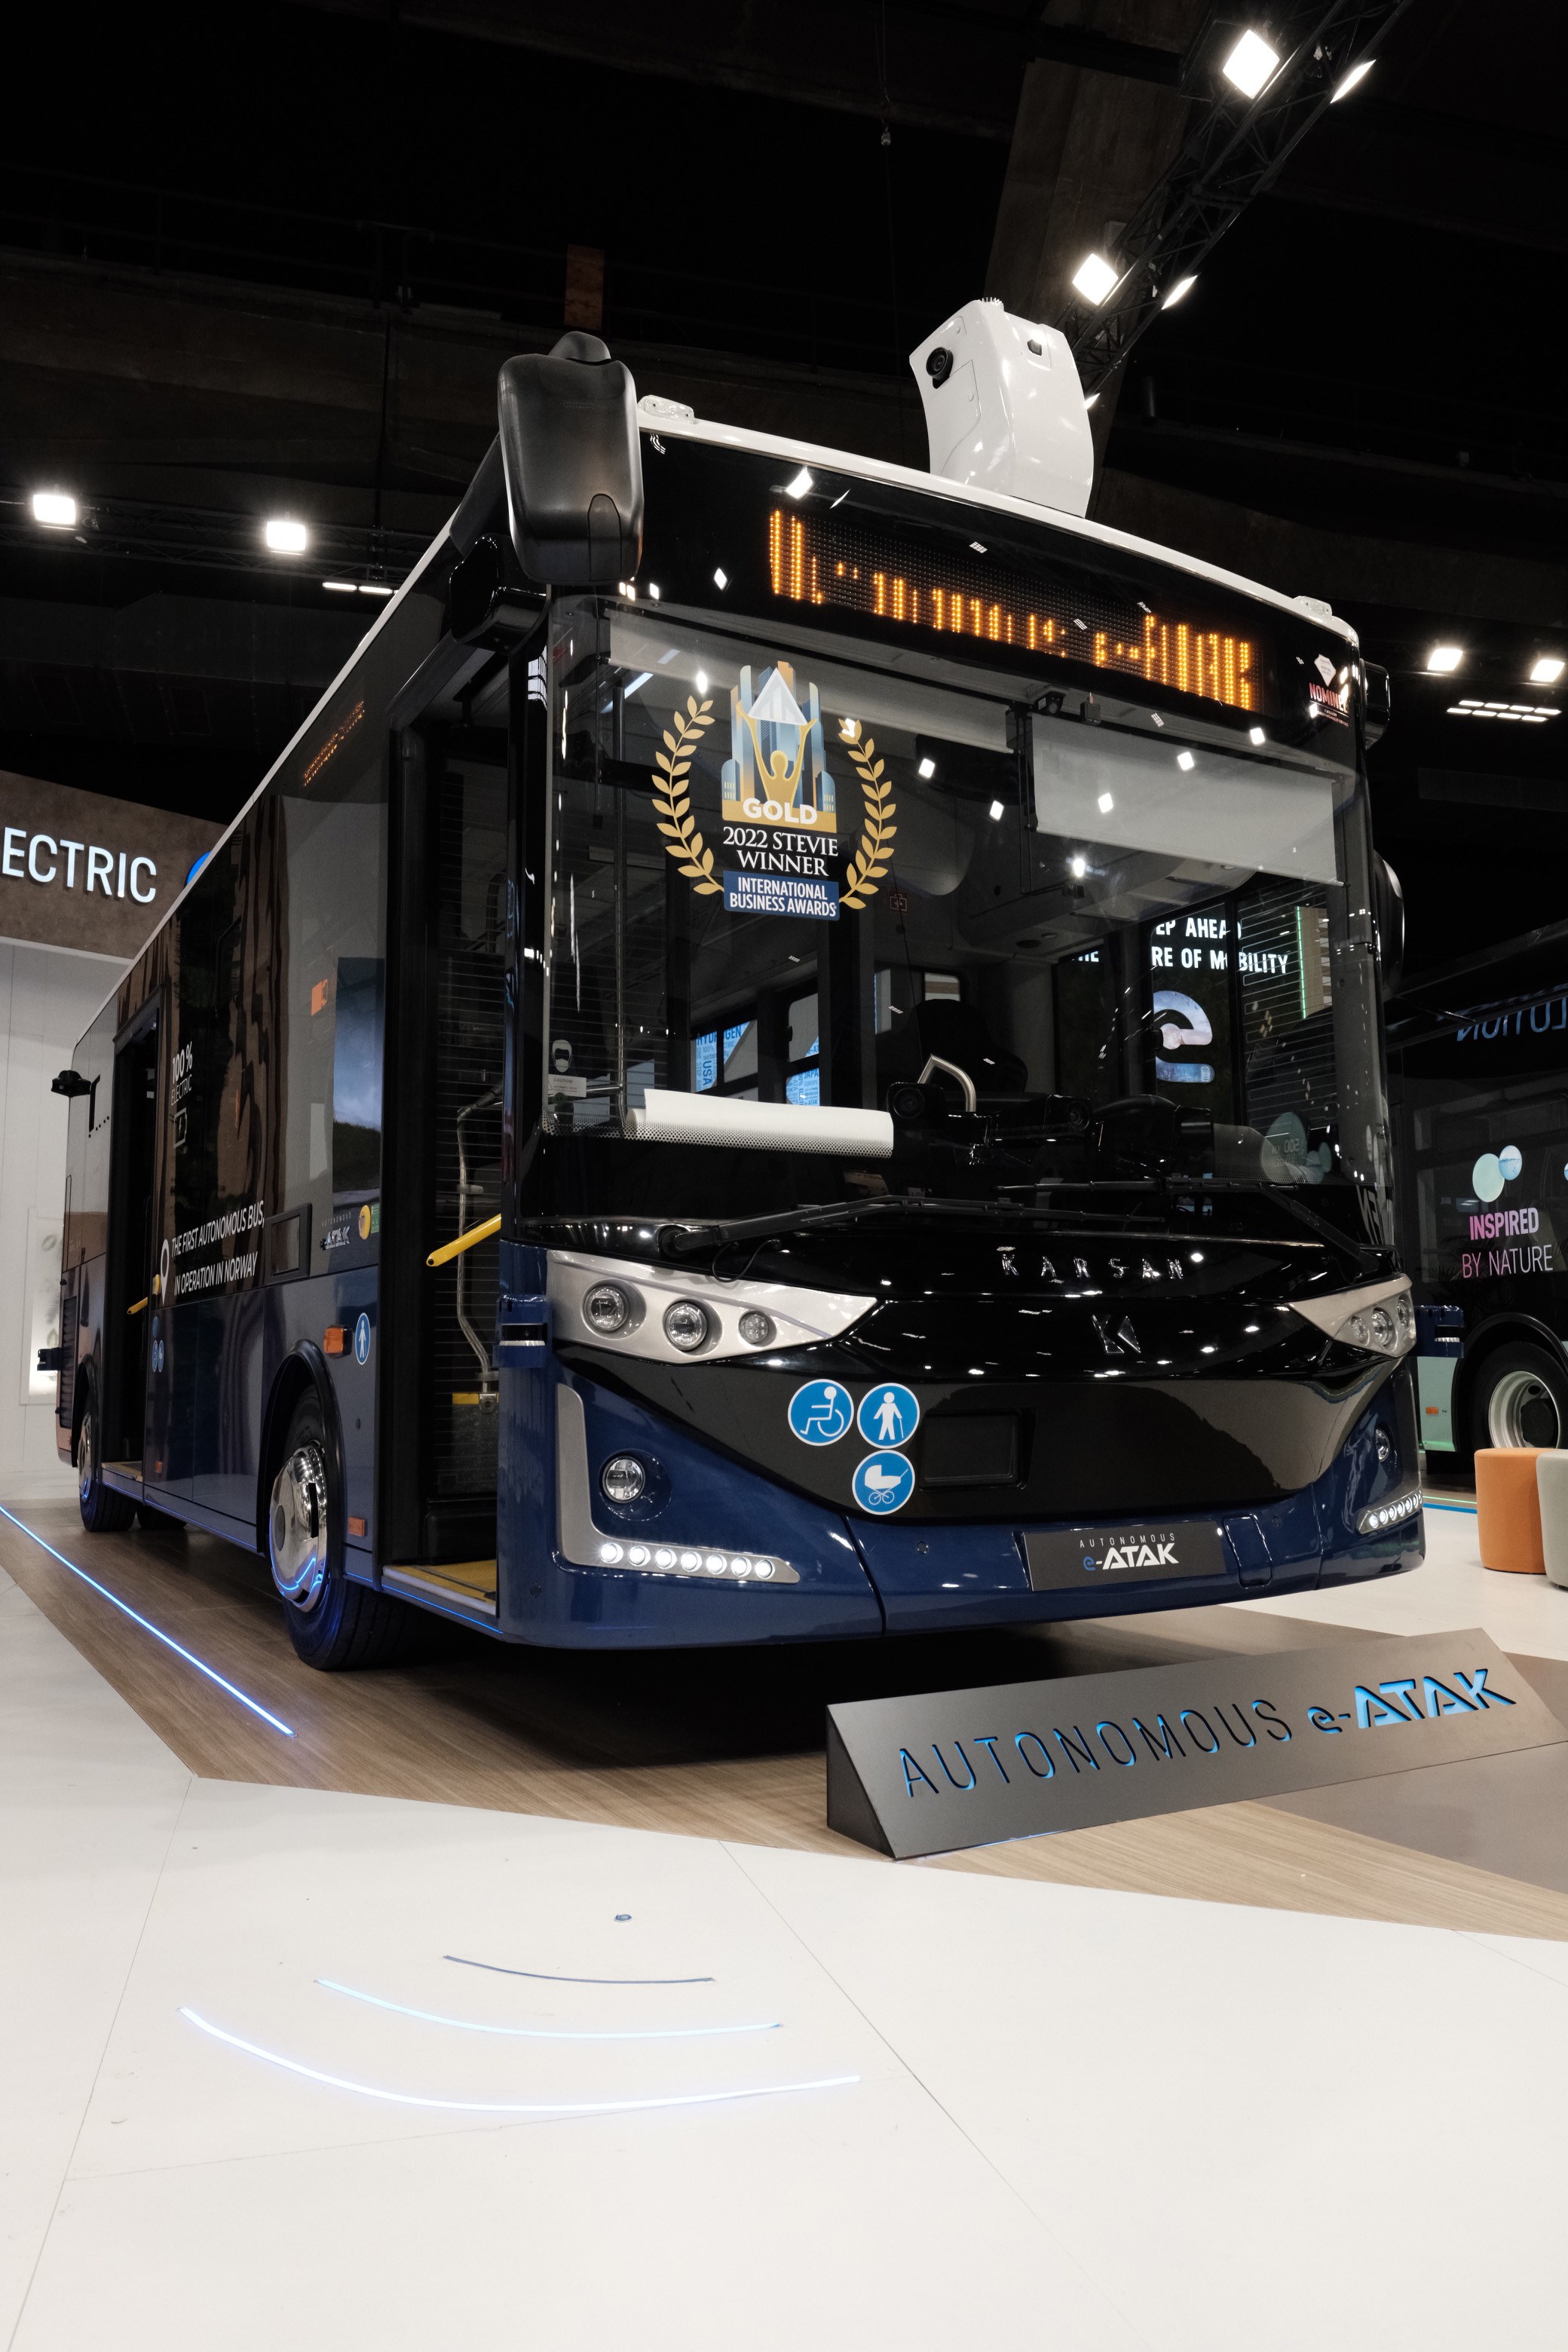 Karsan, yenilikçi ürün gamıyla Busworld 2023'e çıkarma yaptı